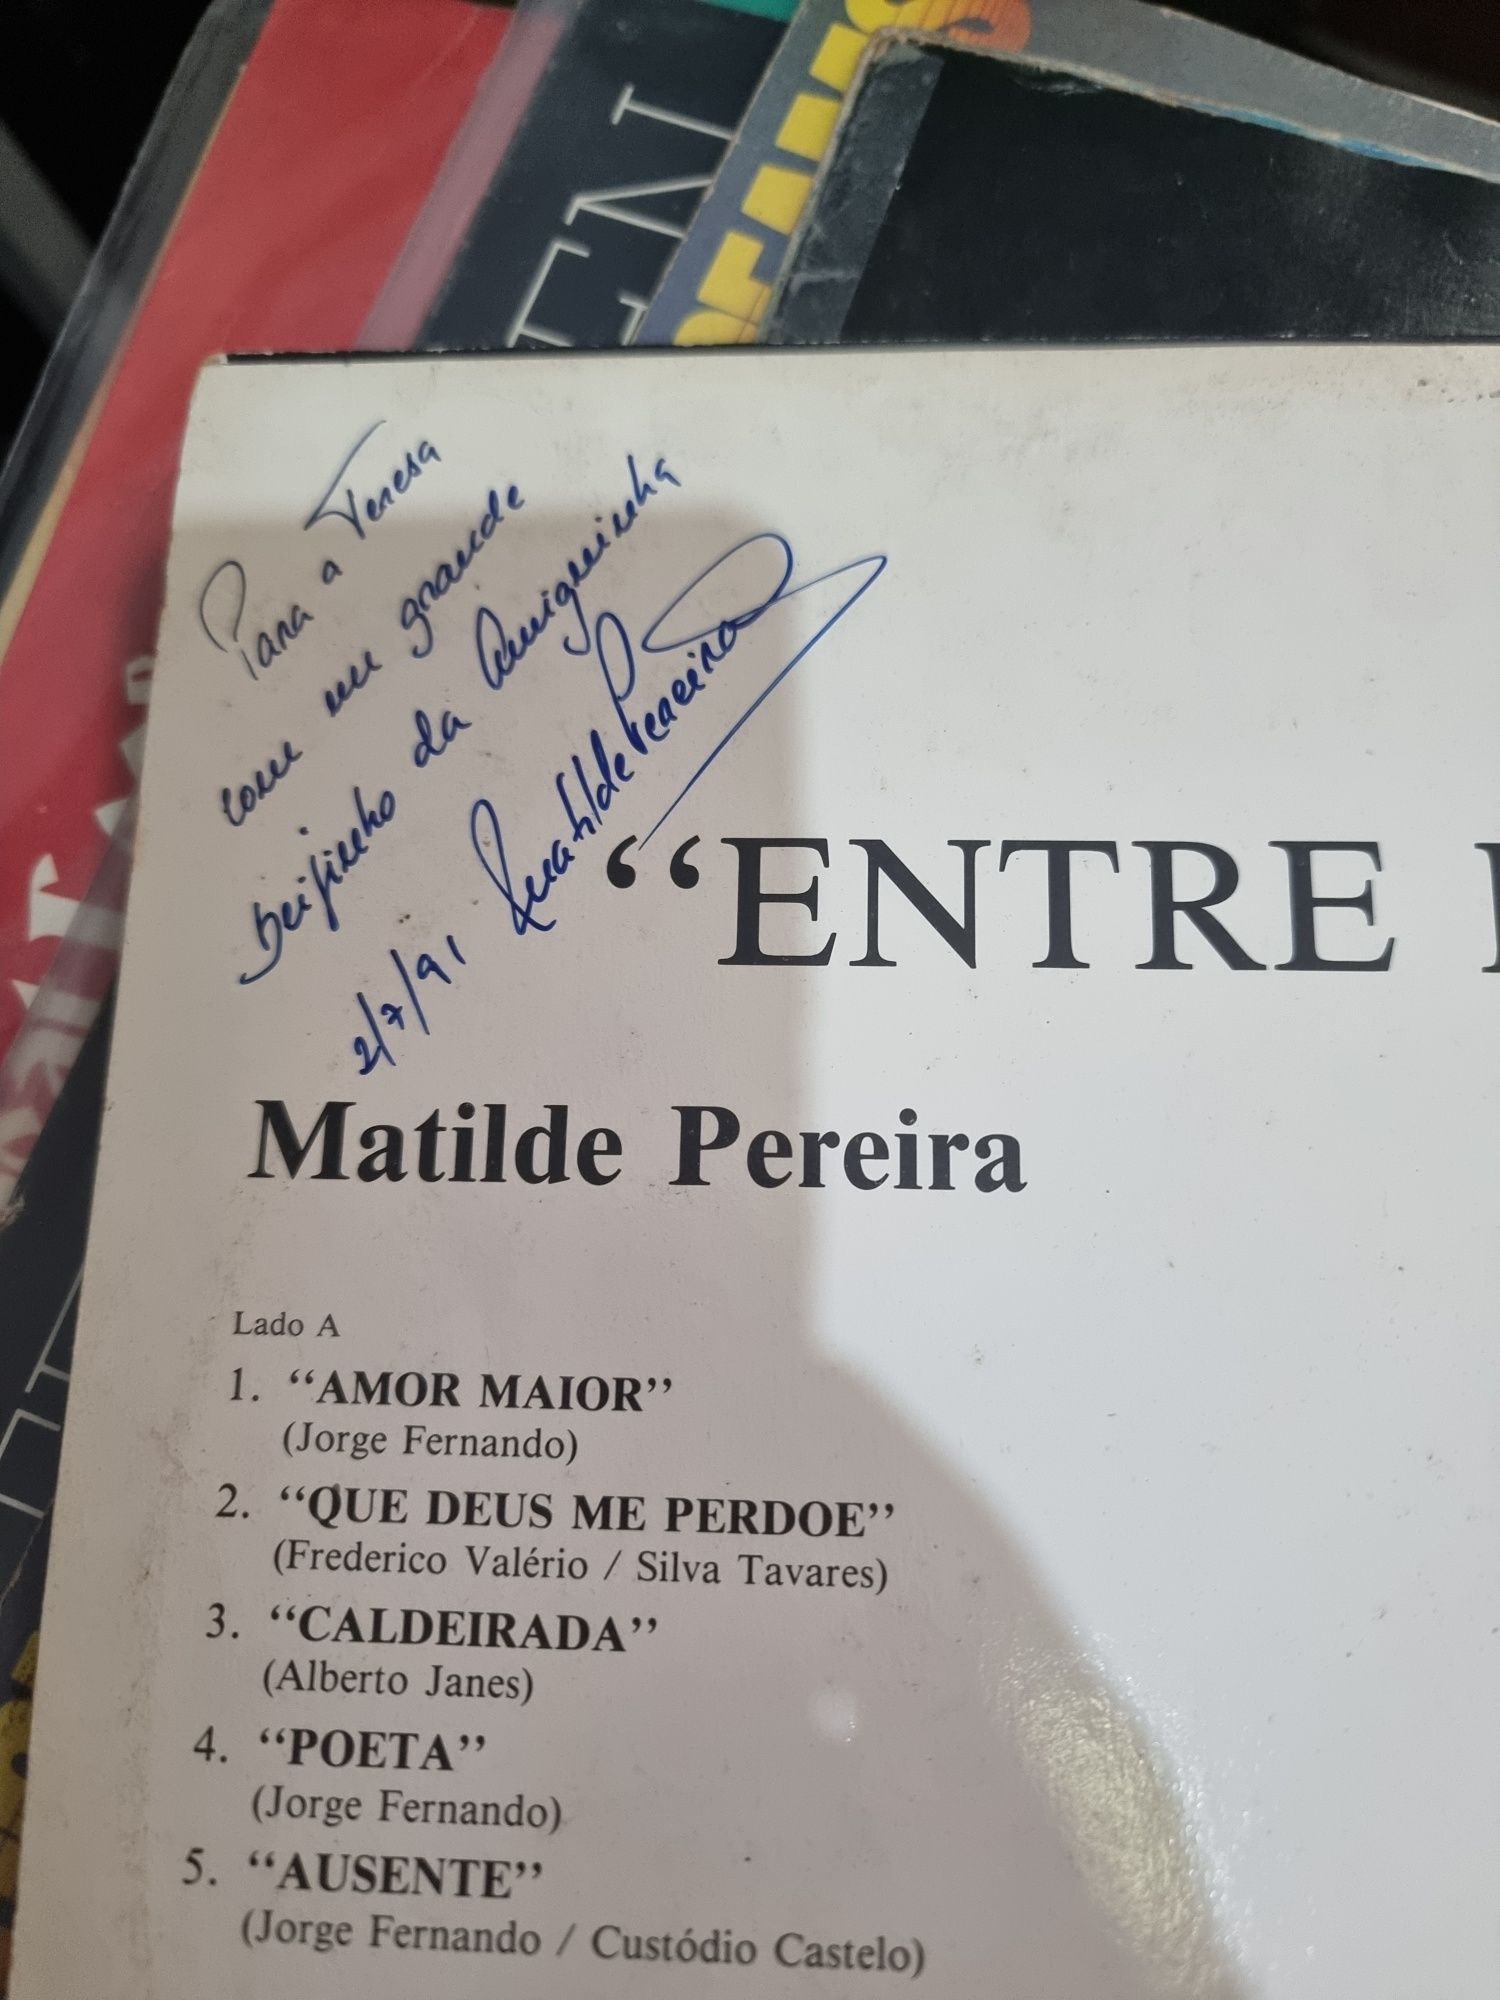 Vendo disco Matilde Pereira com autógrafos